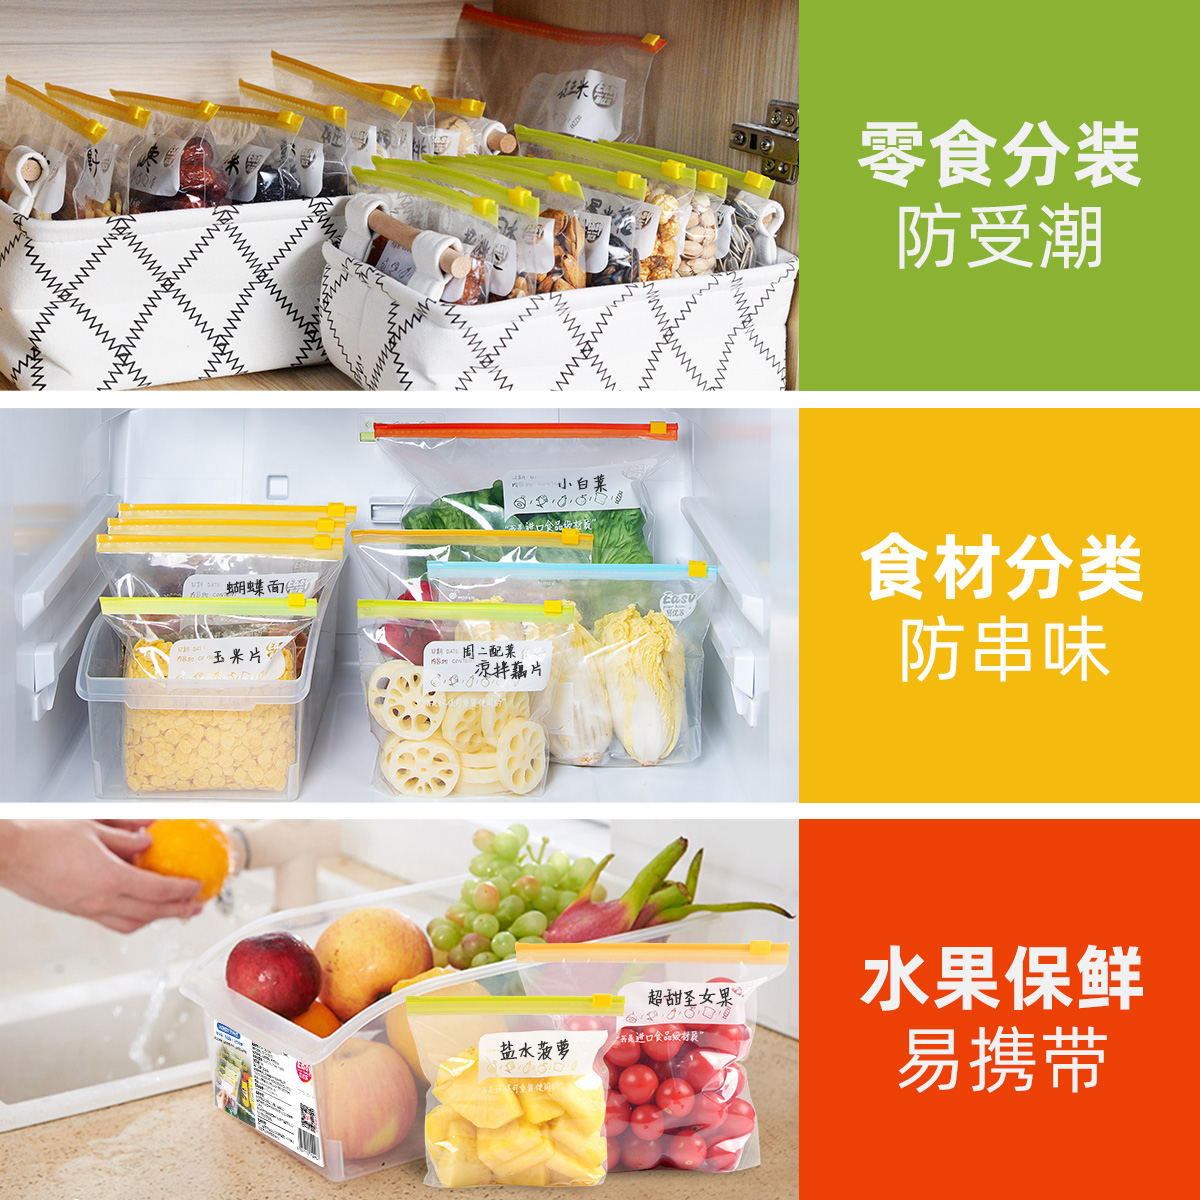 易优家食品密封袋加厚拉链式滑锁袋冰箱冷冻专用收纳袋食用保鲜袋-图2